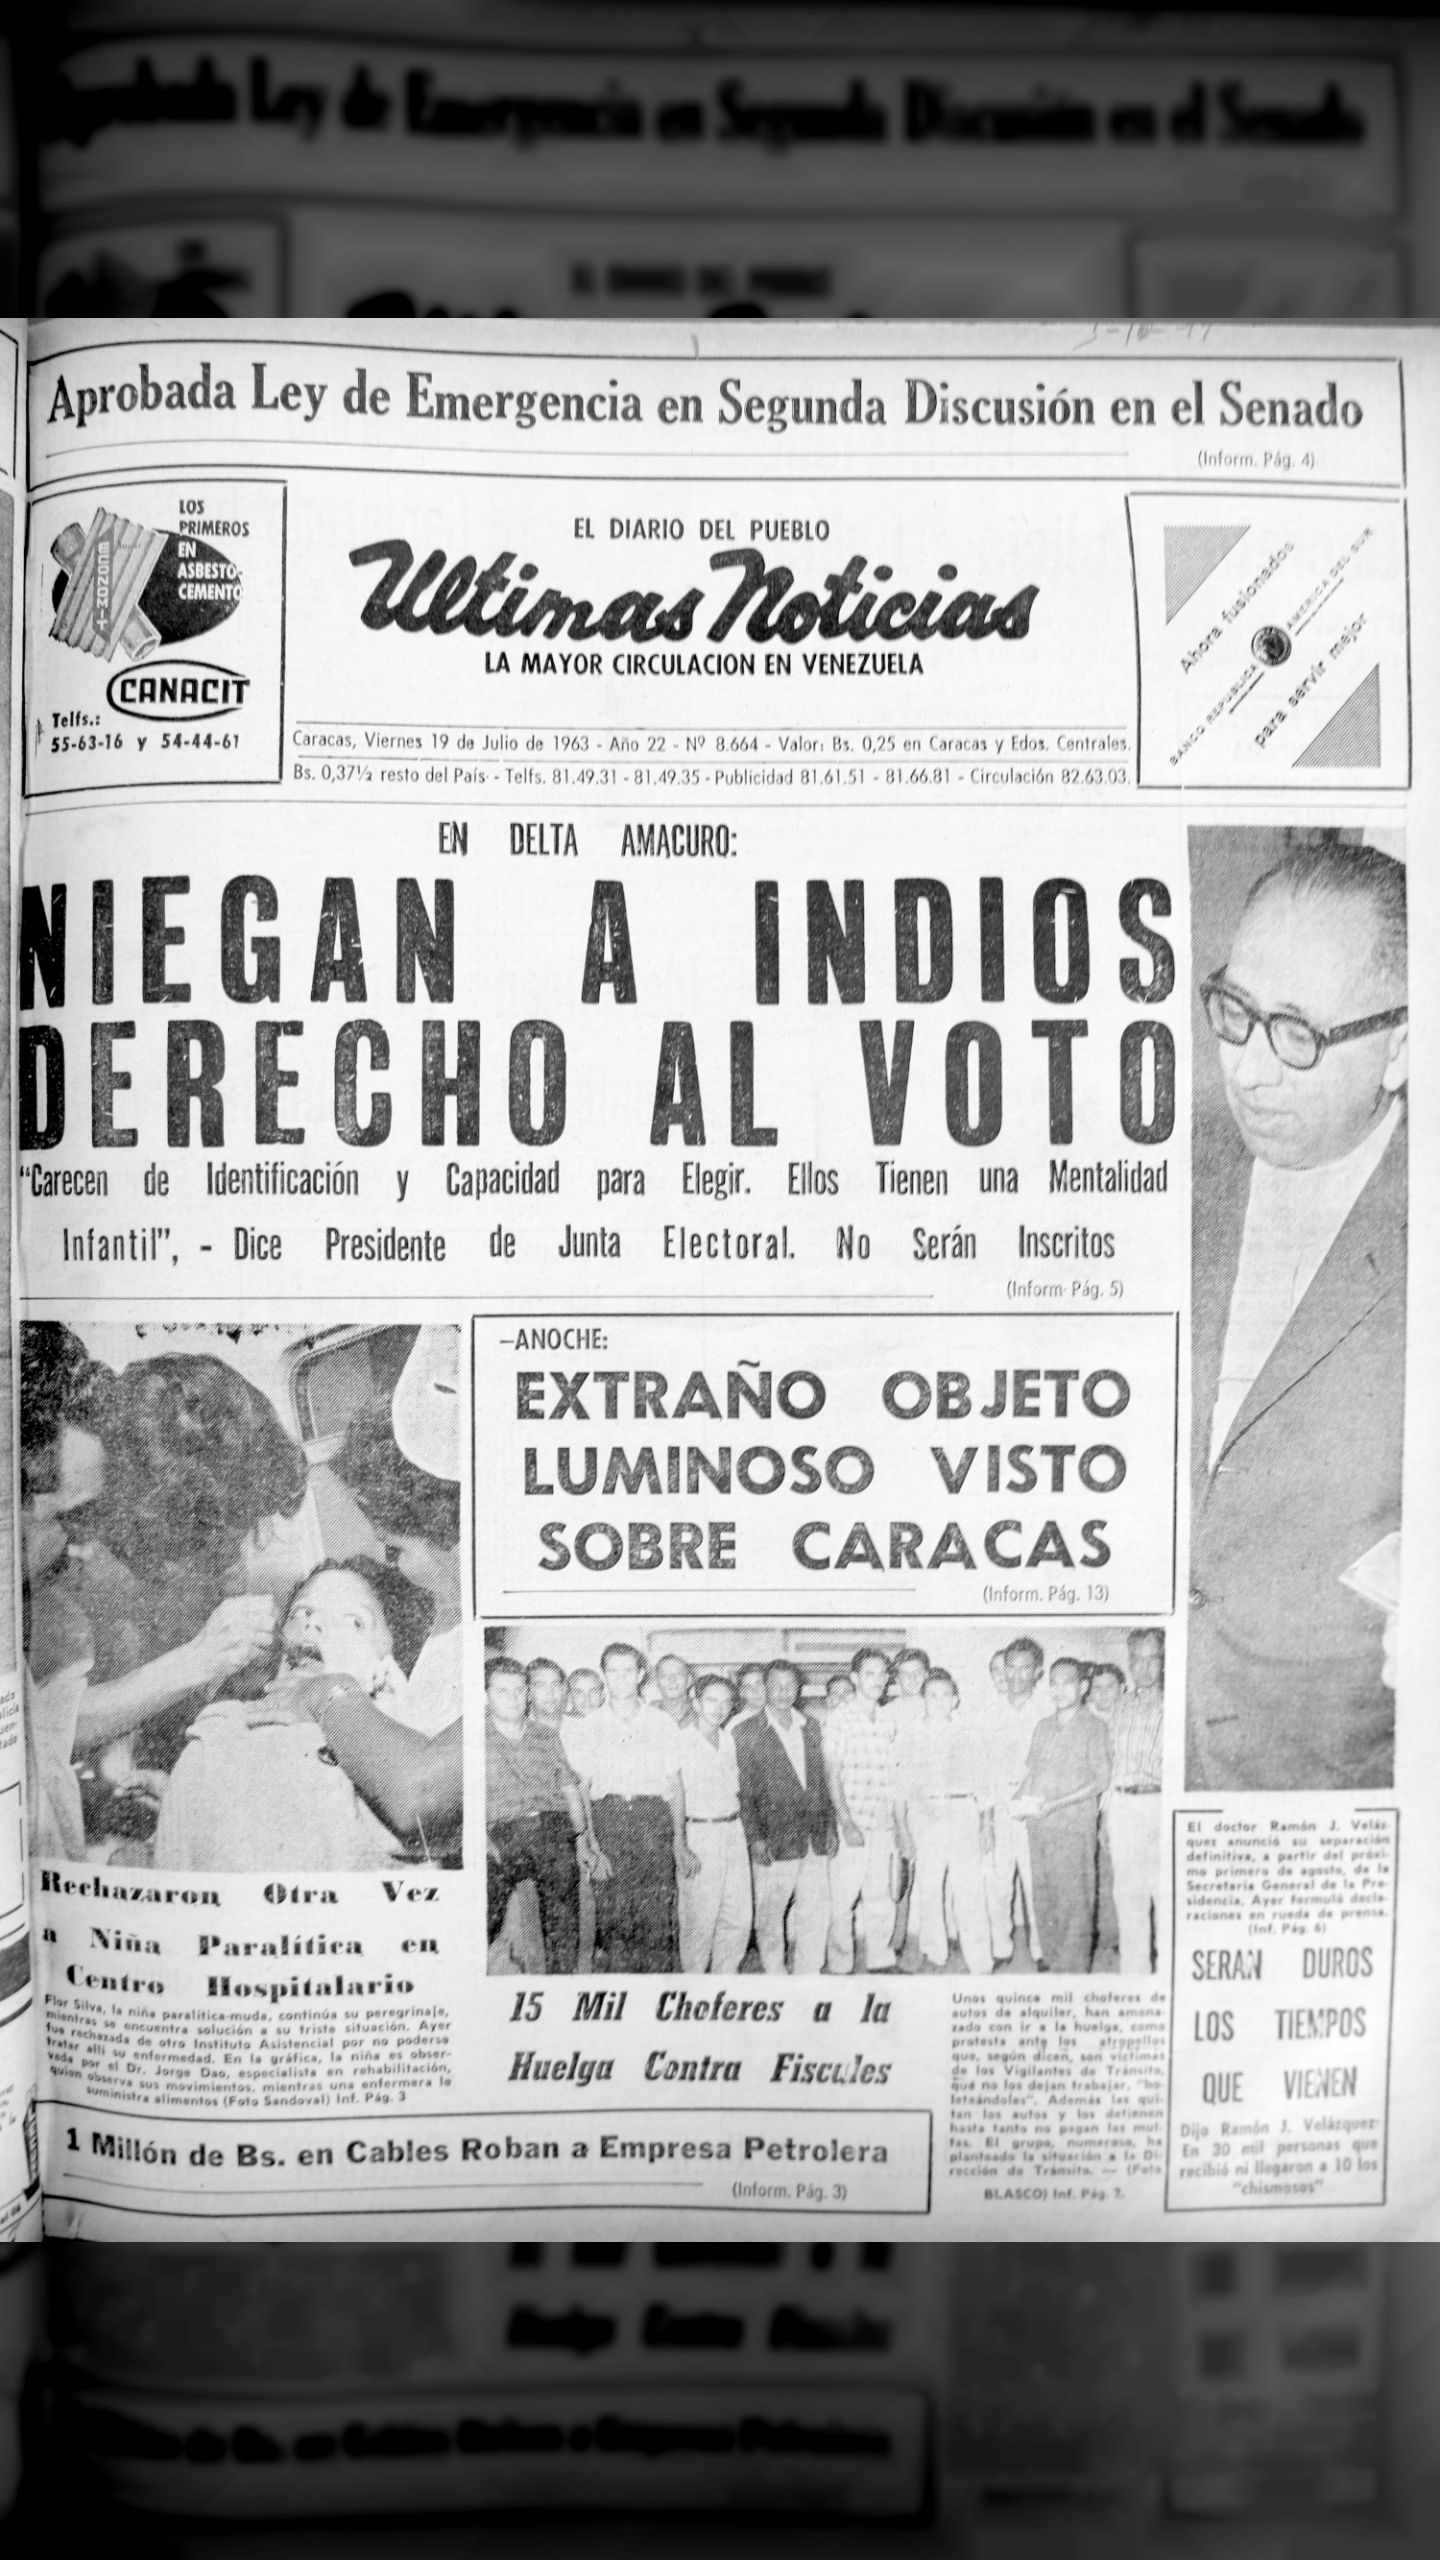 El fraude electoral de 1963